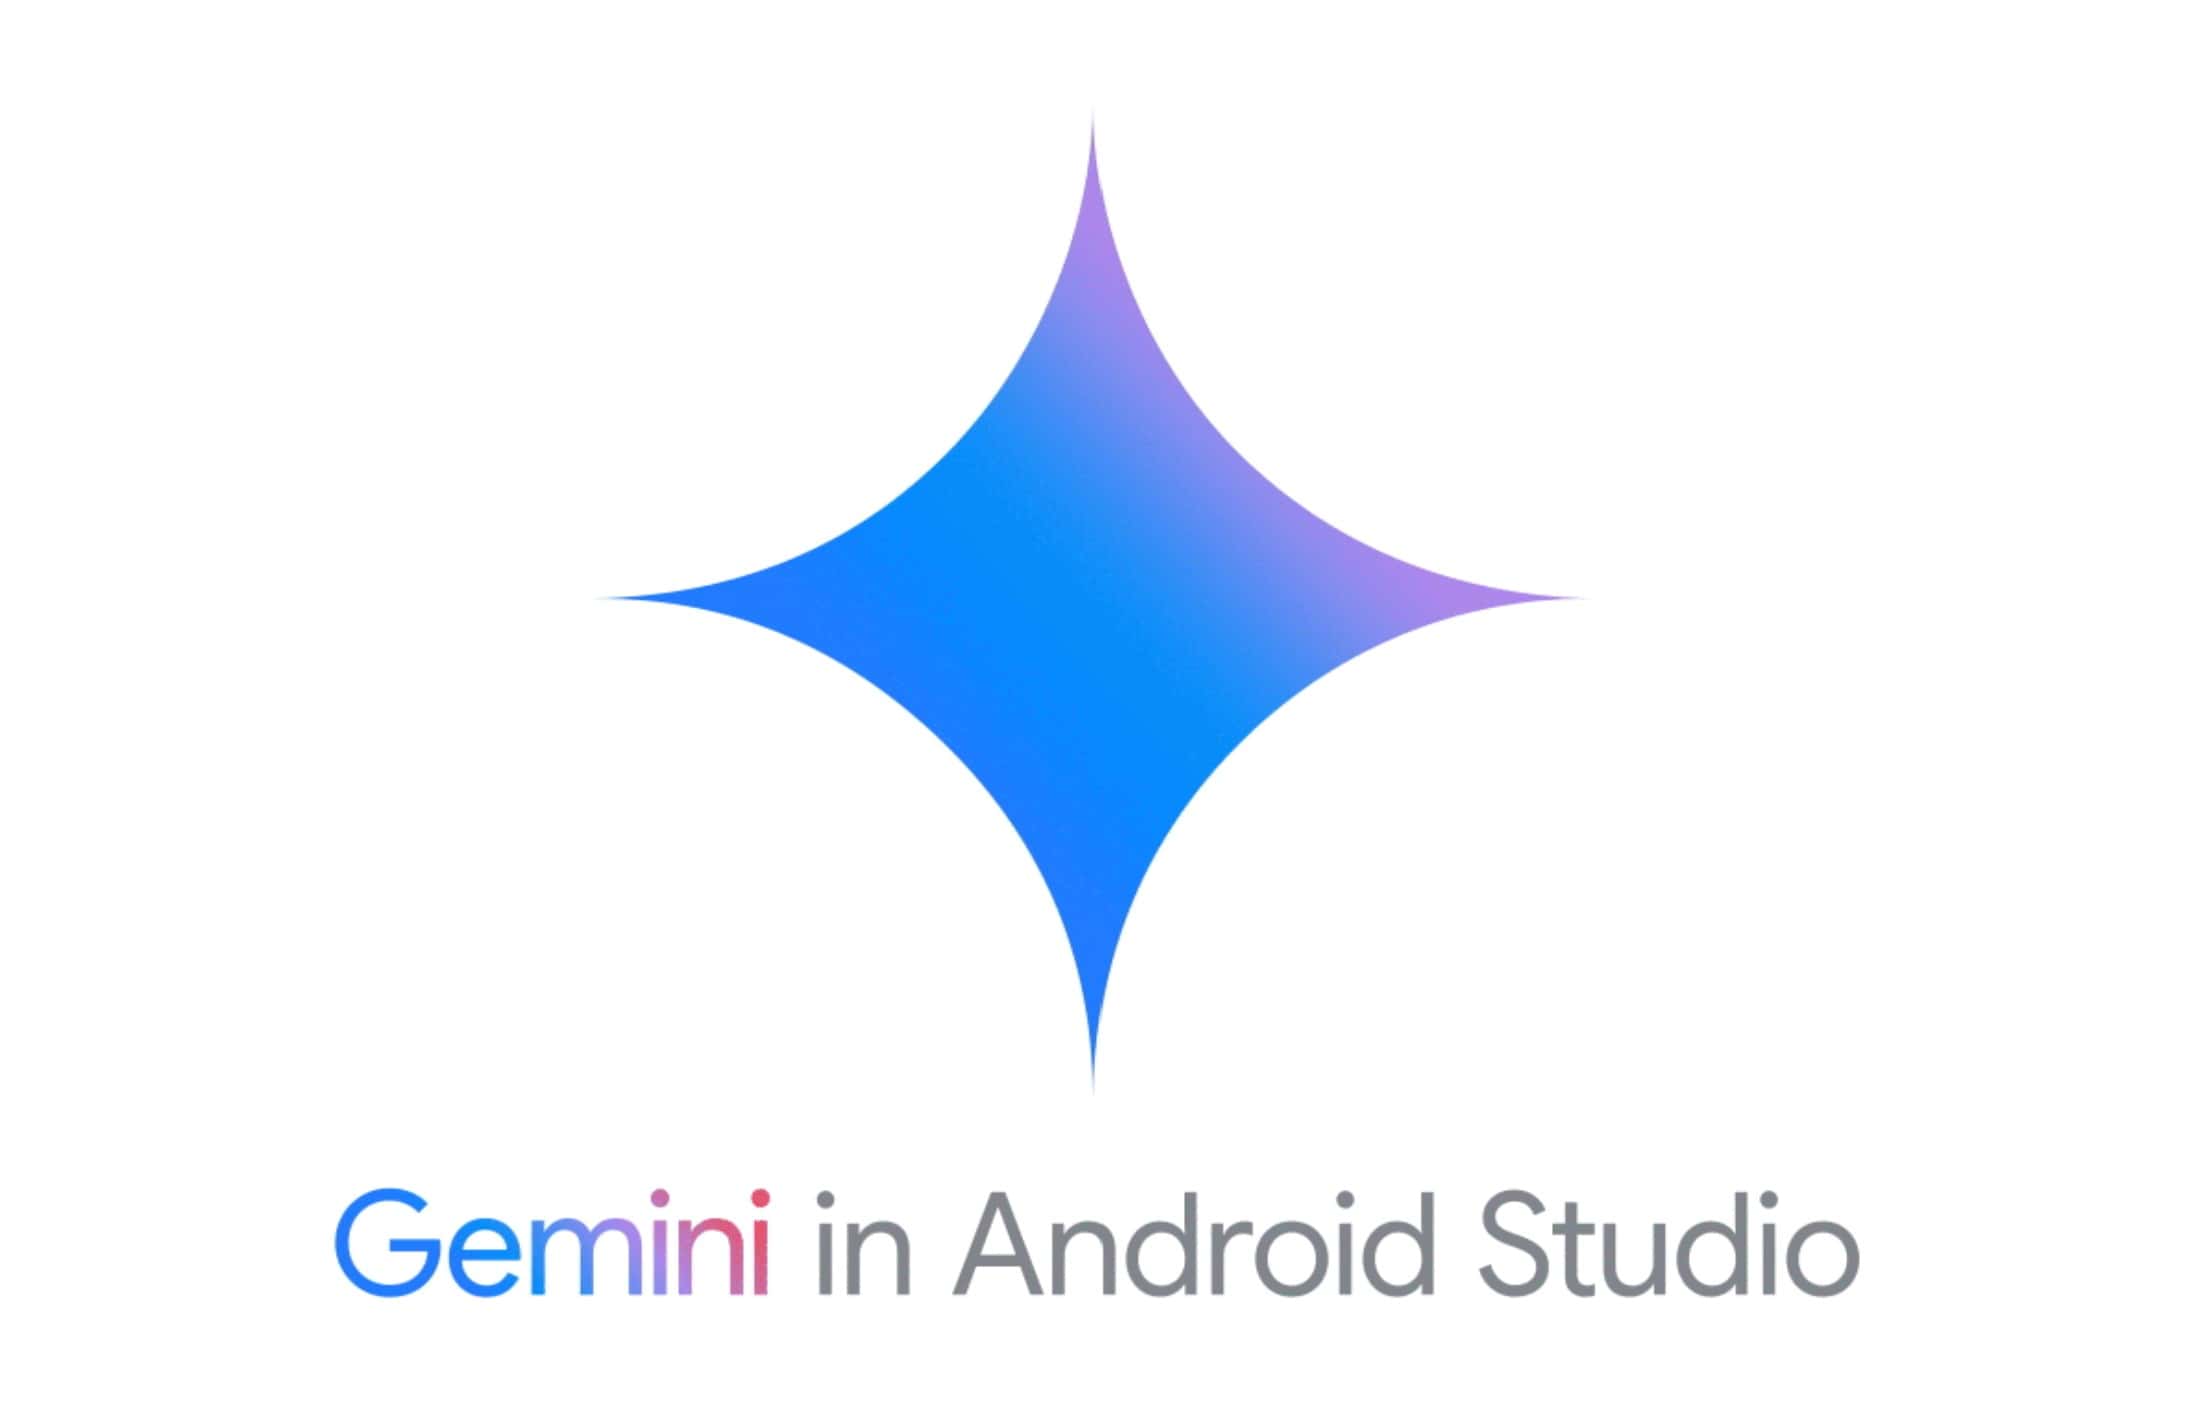 Gemini i Android Studio